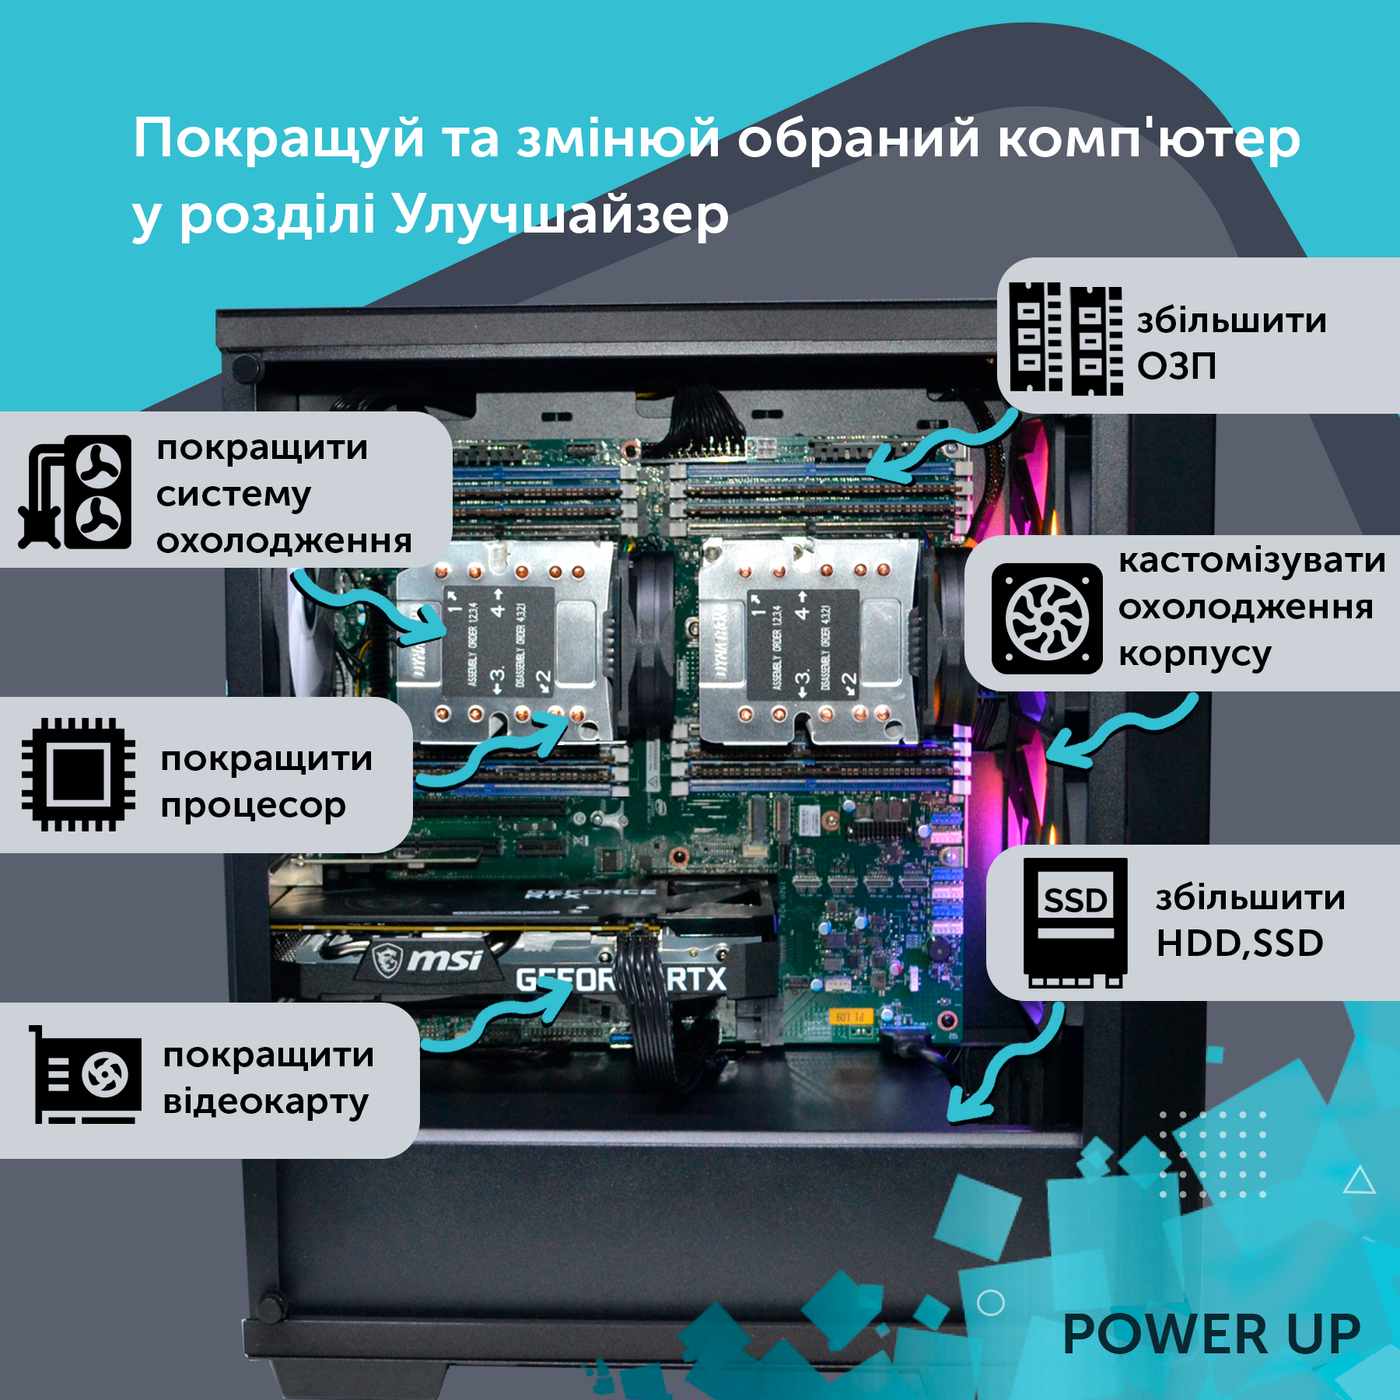 Рабочая станция PowerUp Desktop #87 Ryzen 9 5950x/32 GB/HDD 2 TB/SSD 512GB/GeForce RTX 3070 8GB